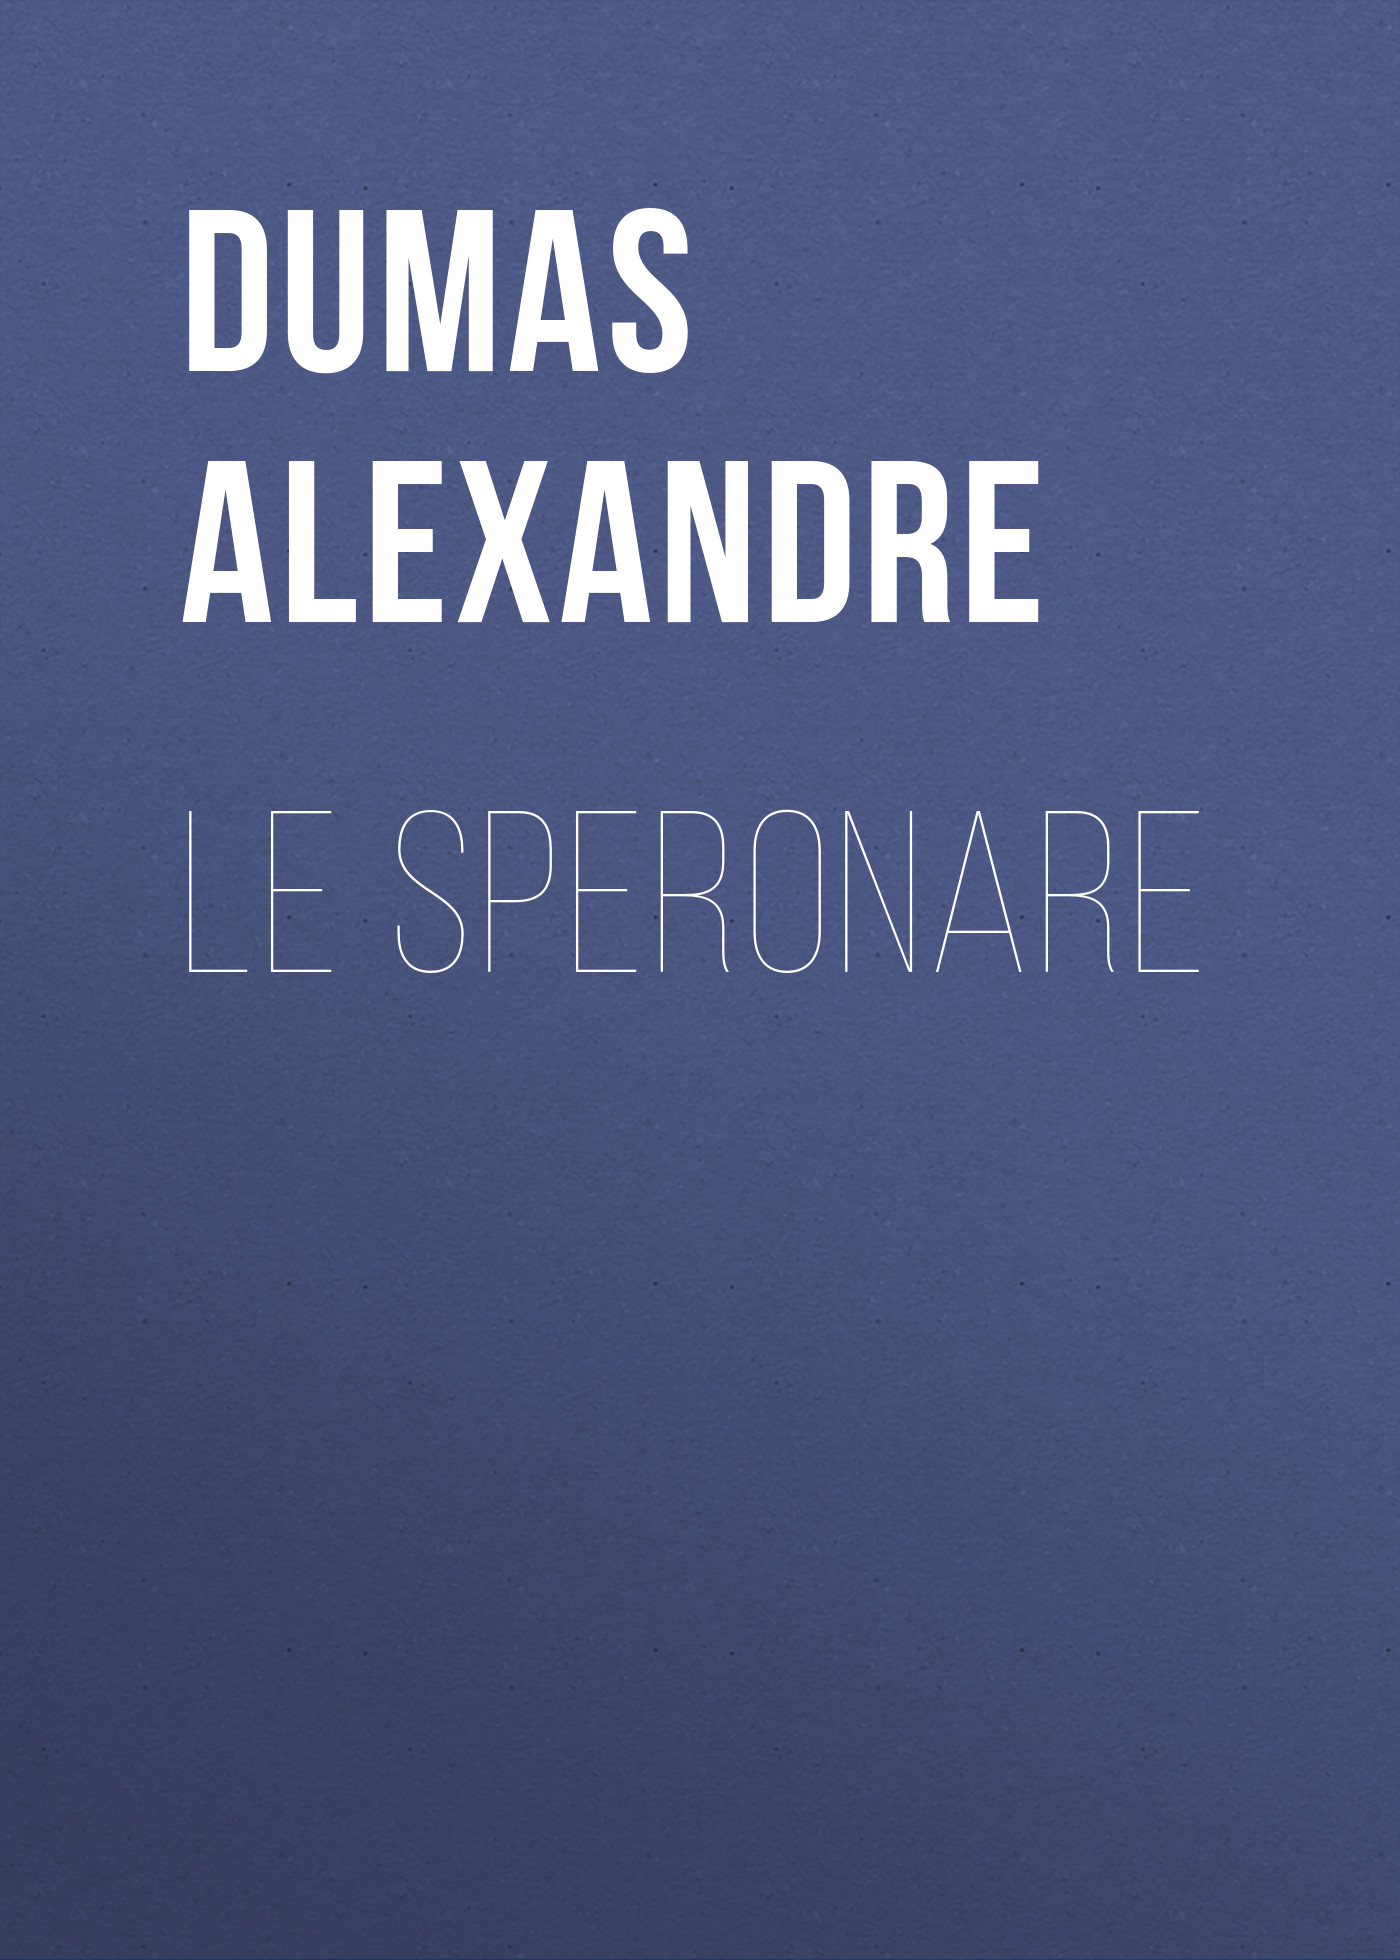 Книга Le Speronare из серии , созданная Alexandre Dumas, может относится к жанру Литература 19 века, Зарубежная старинная литература, Зарубежная классика. Стоимость электронной книги Le Speronare с идентификатором 25203535 составляет 0 руб.